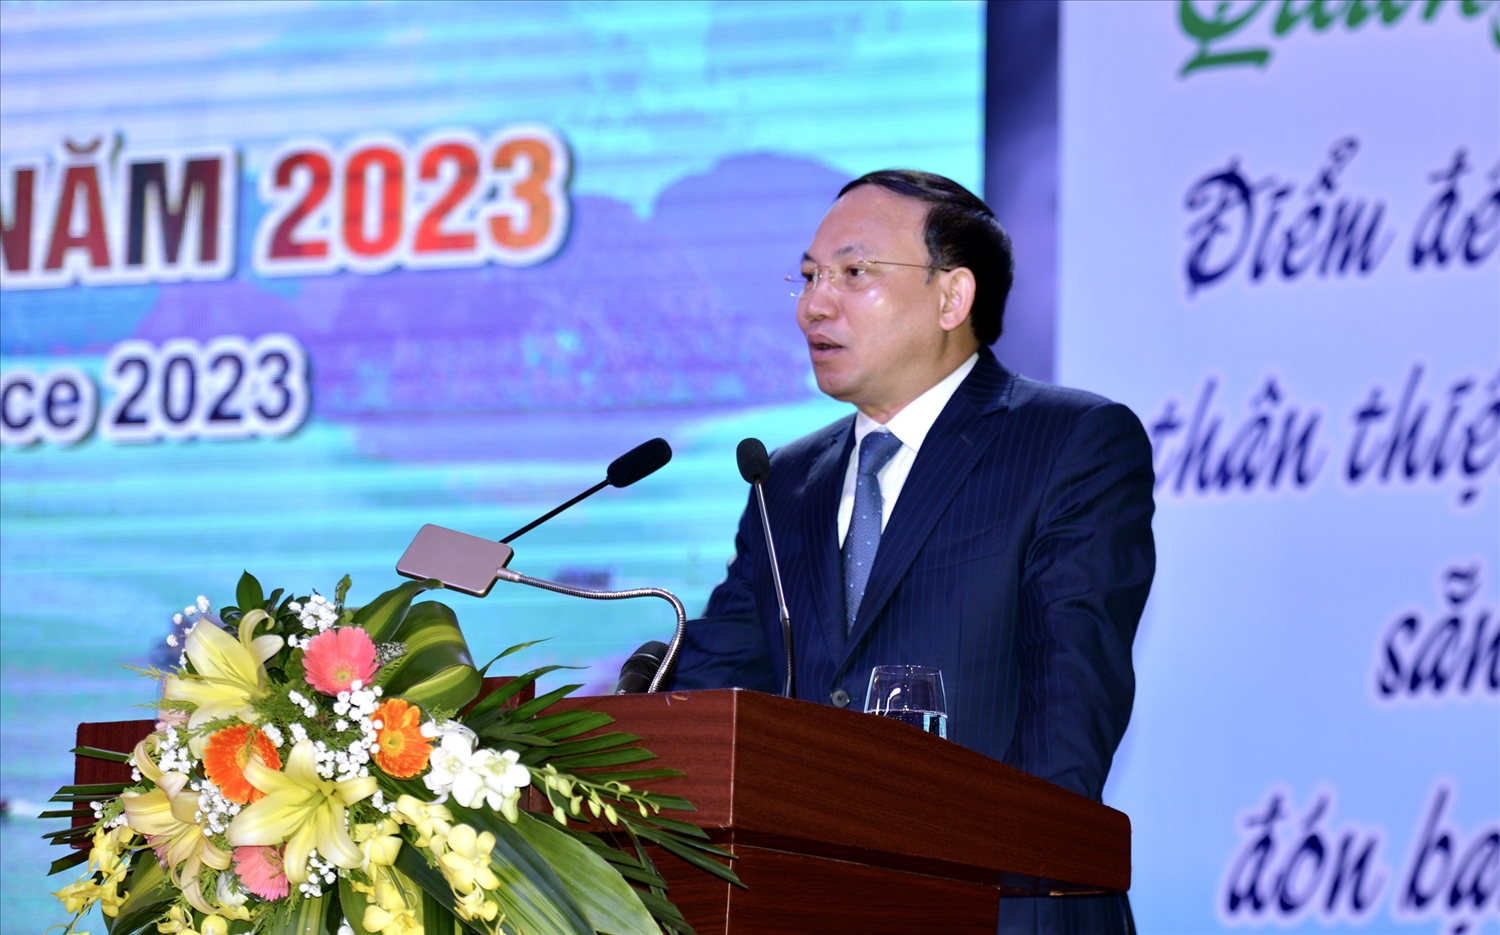 Ông Nguyễn Xuân Ký, Bí Thư Tỉnh ủy Quảng Ninh phát biểu khai mạc tại Hội nghị